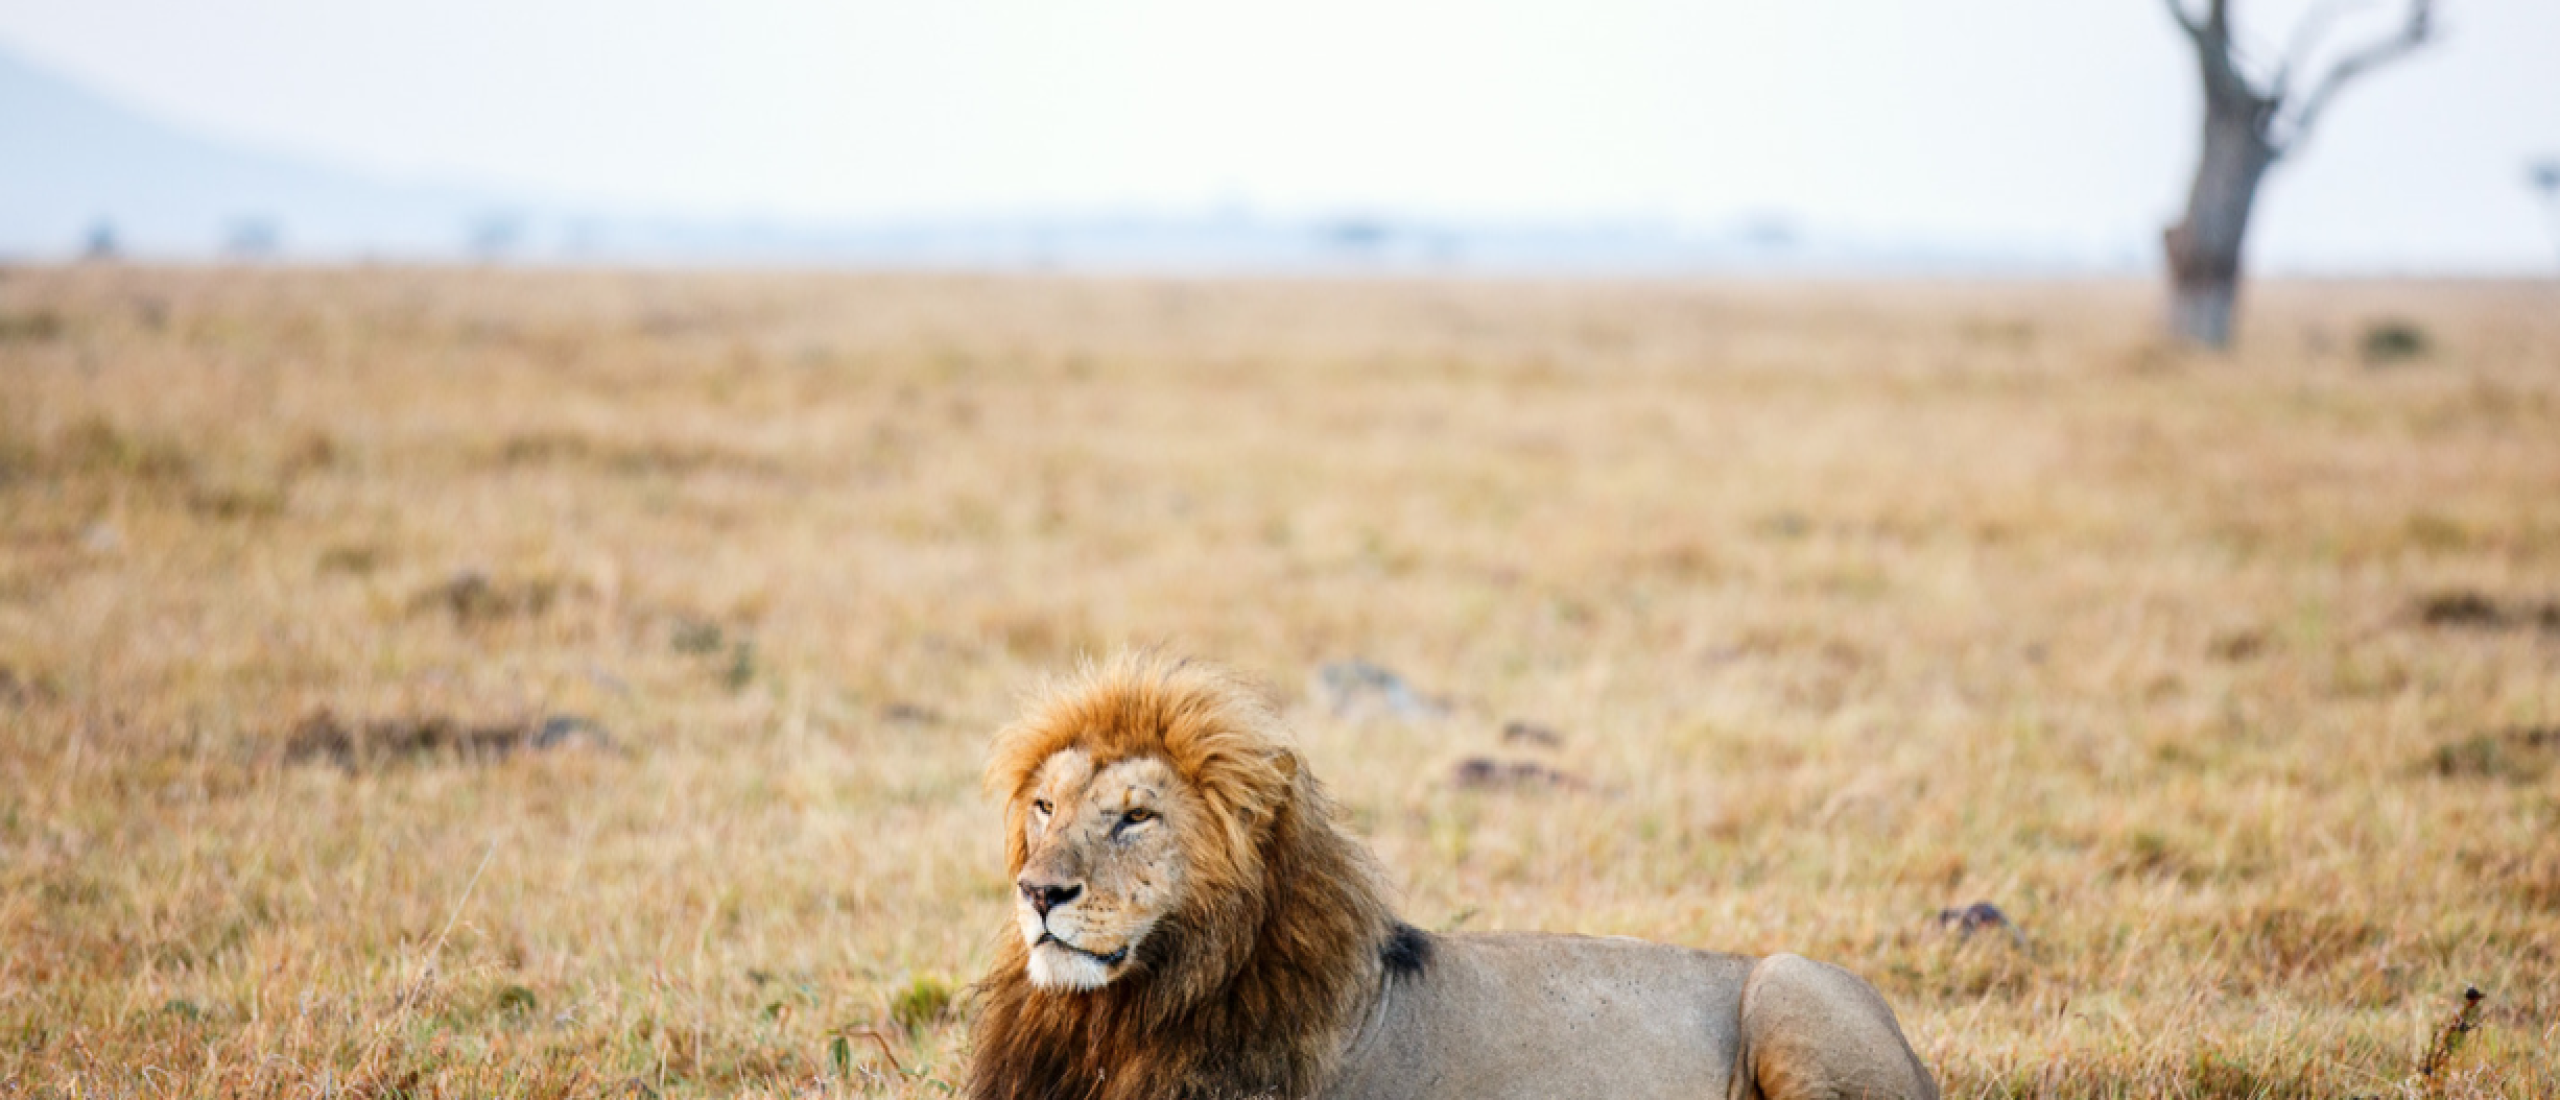 Op safari in Afrika? Dit zijn de 5 beste bestemmingen!